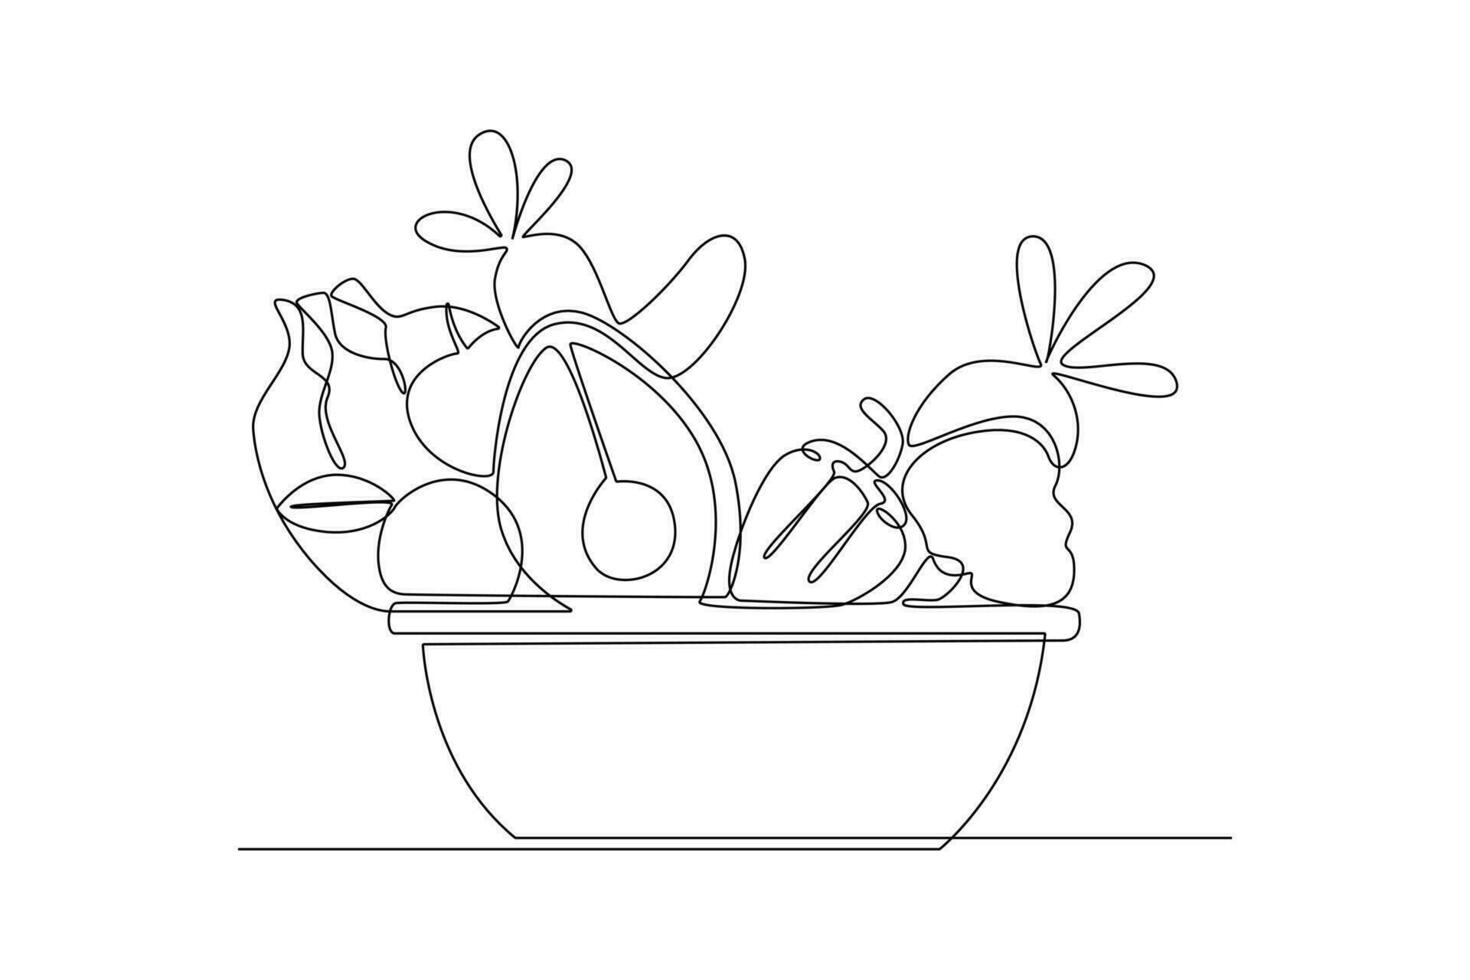 kontinuierlich einer Linie Zeichnung gesund Essen Konzept. Gemüse, Früchte und Milch. Gekritzel Vektor Illustration.